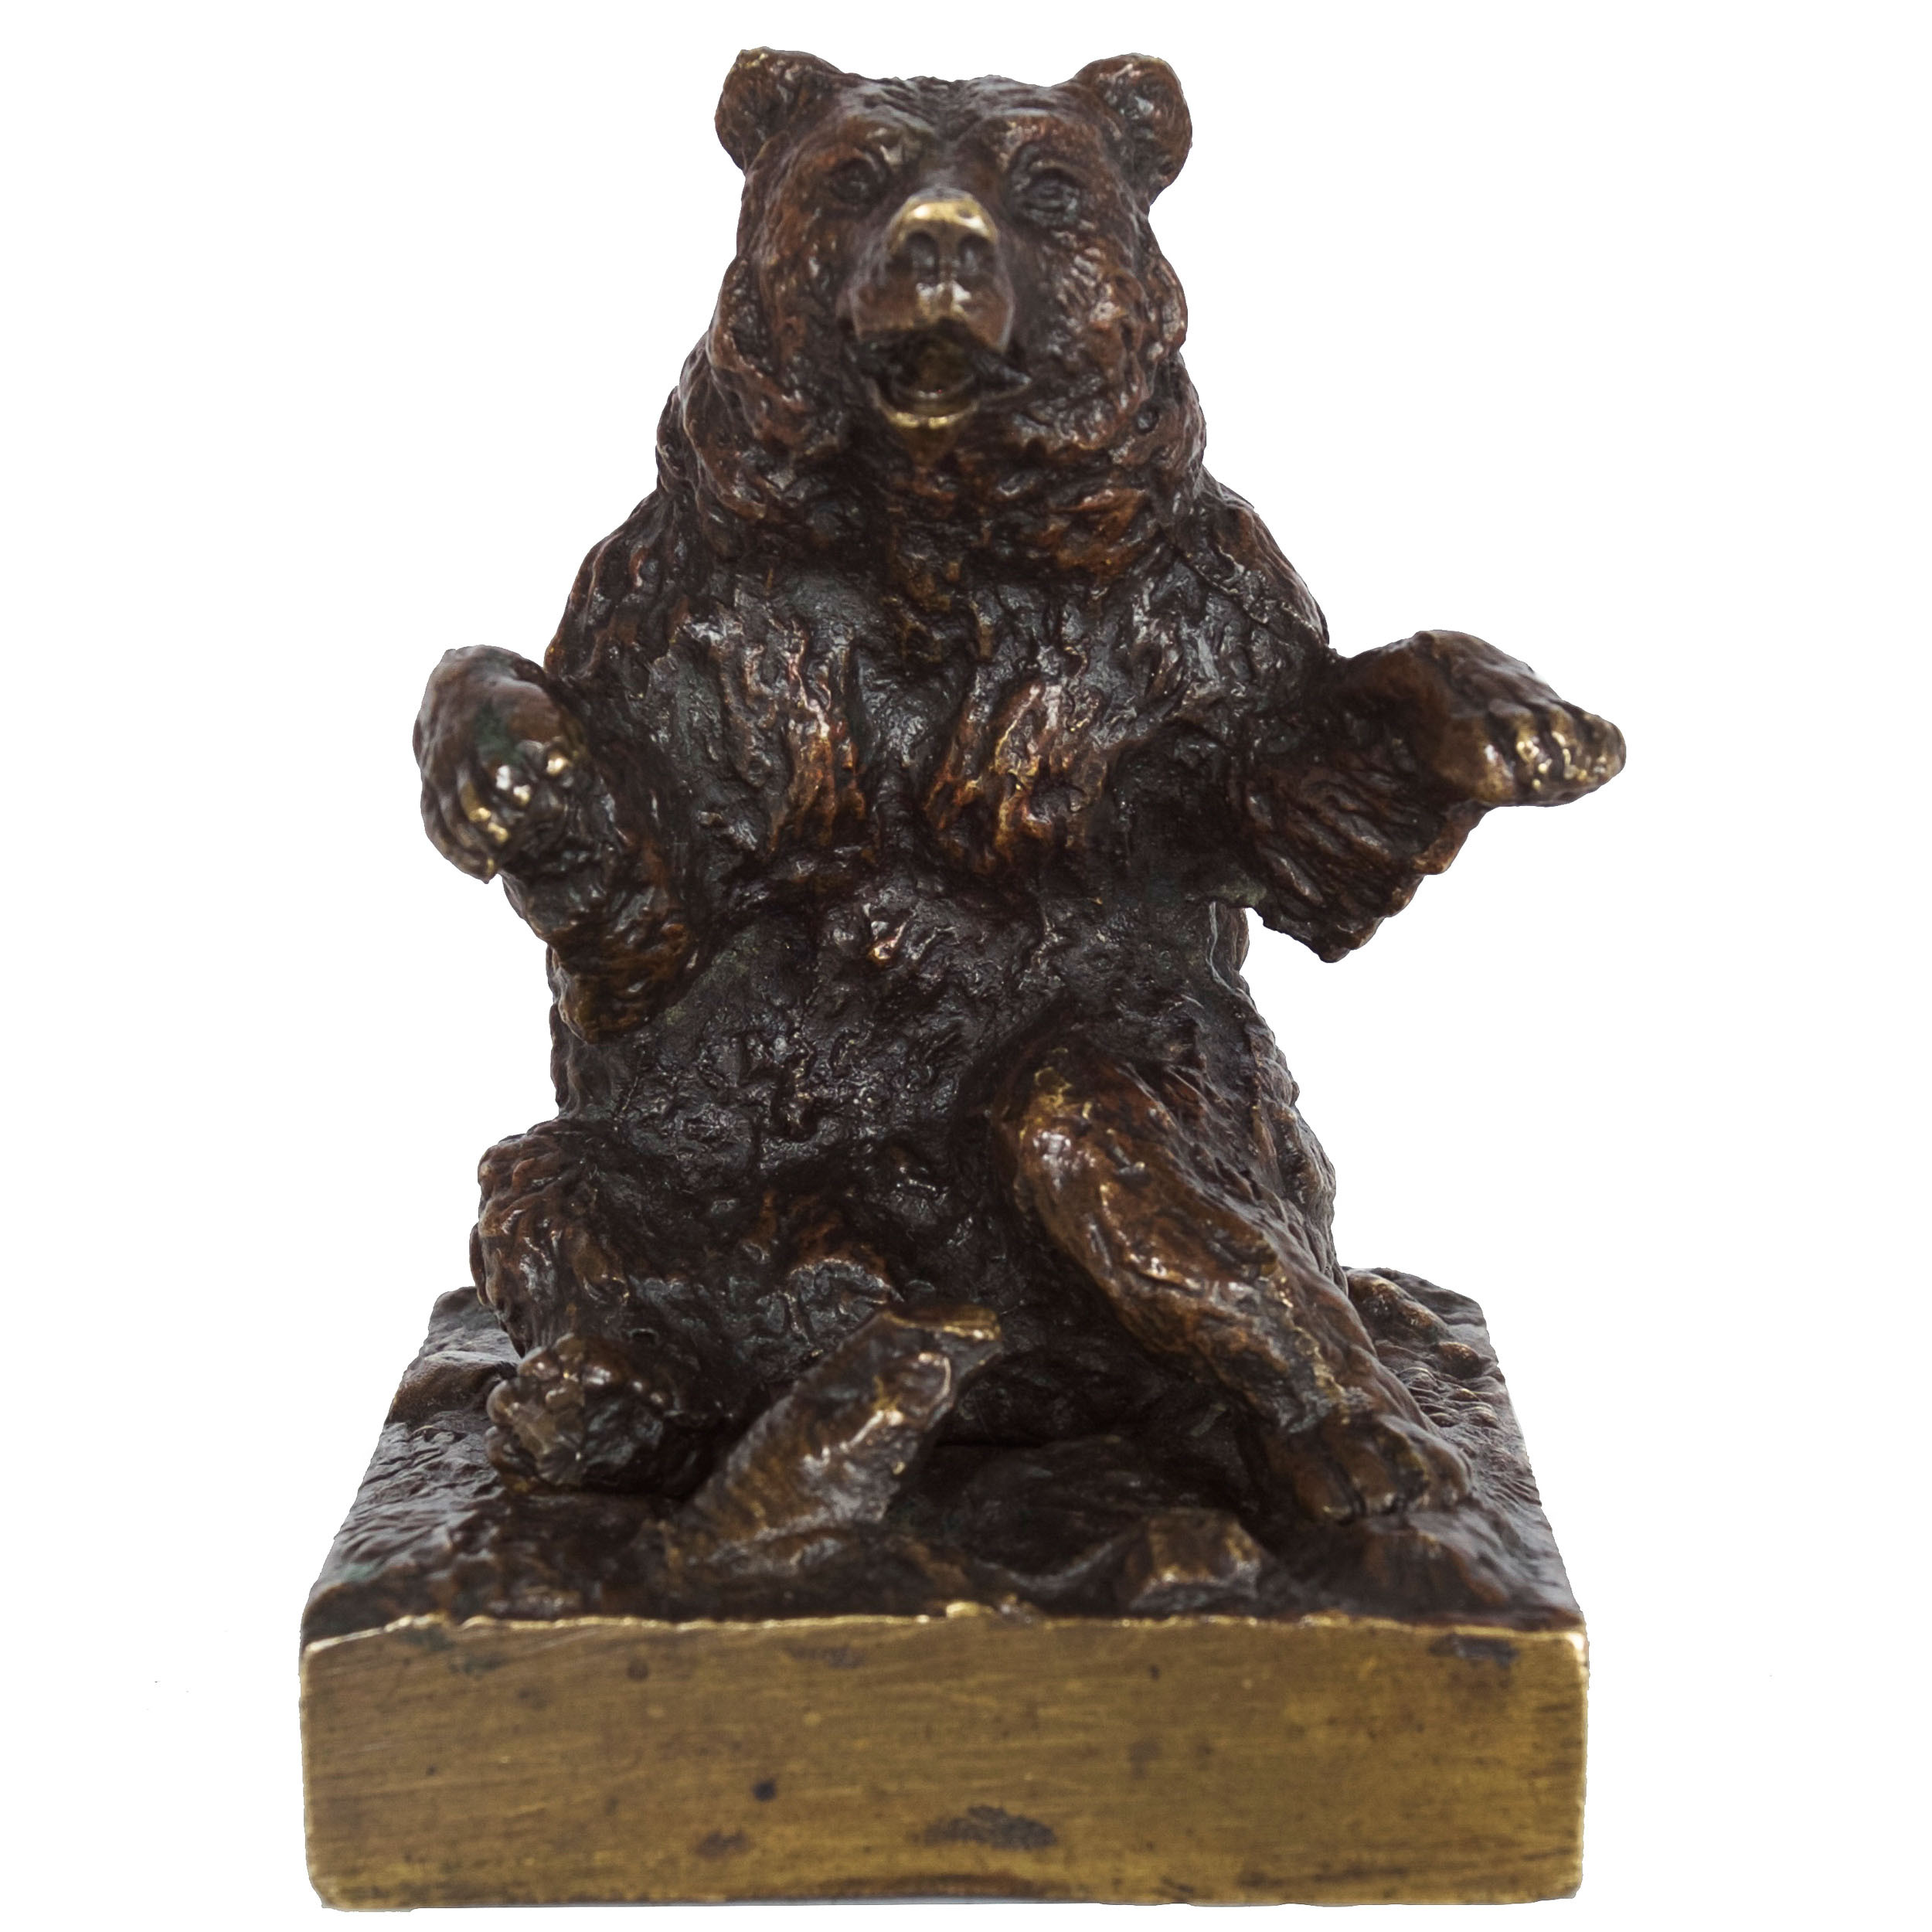 Sitting Bear Sculpture